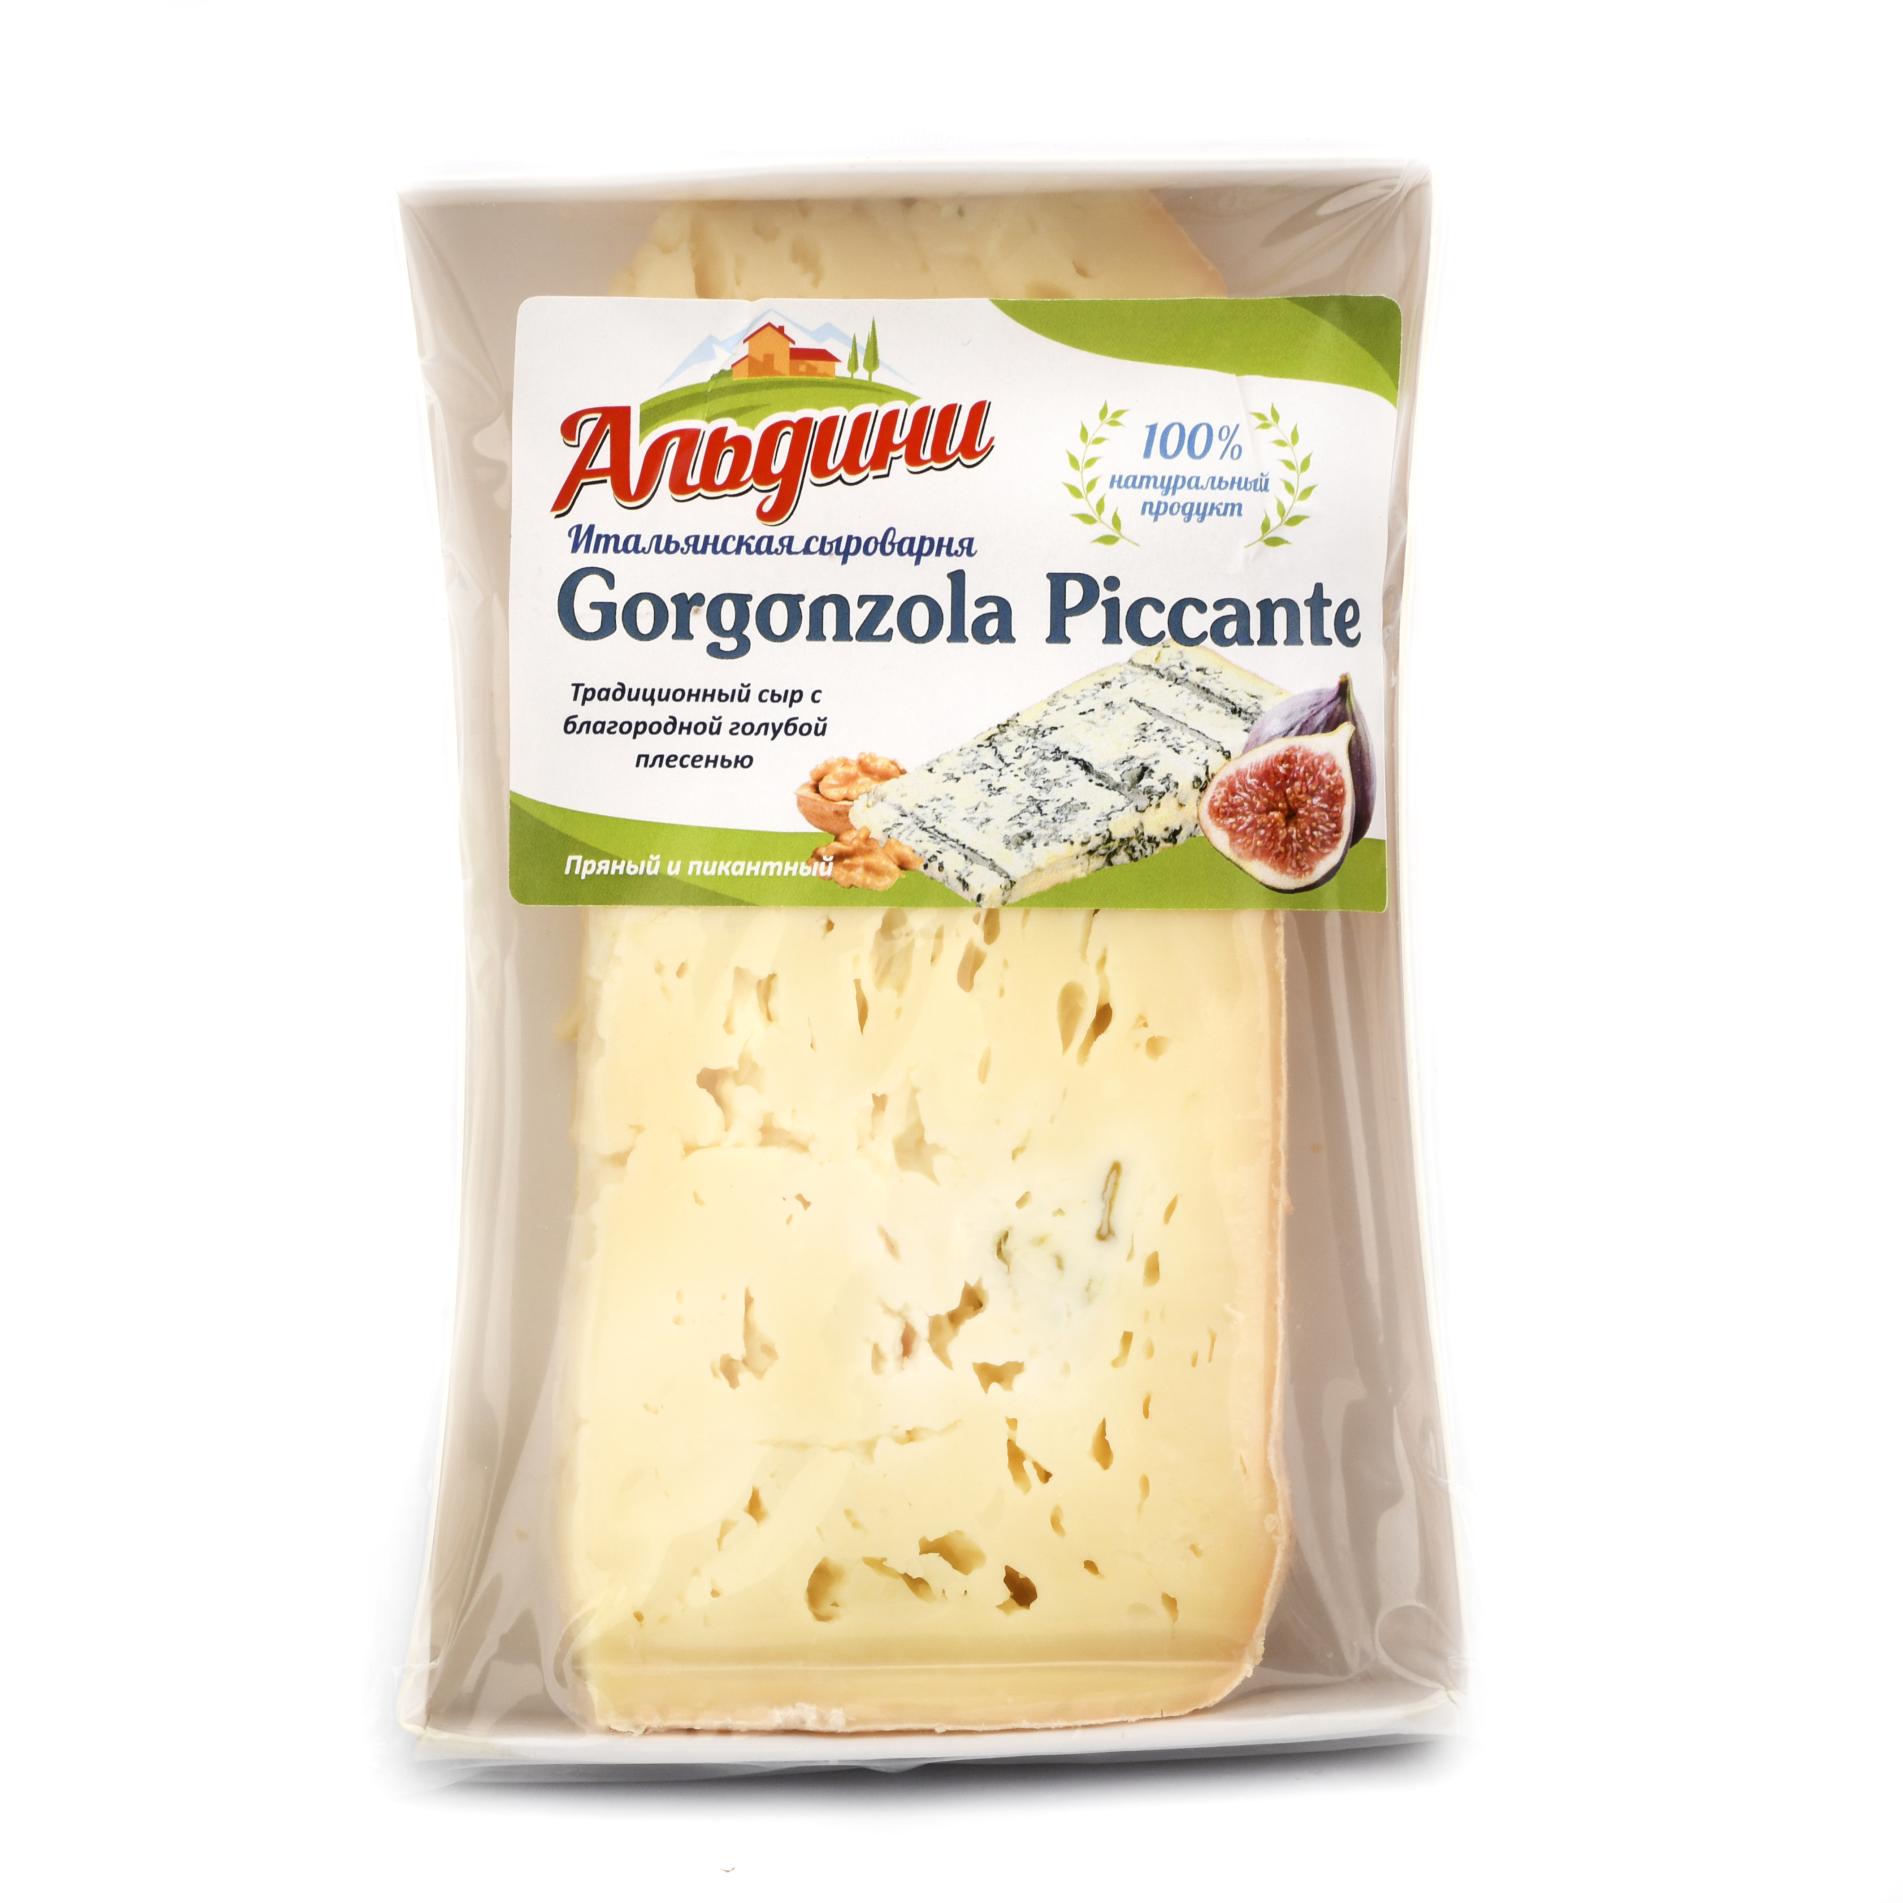 Сыр Горгонзола Пиканте ~ 100 г (0.1 кг)